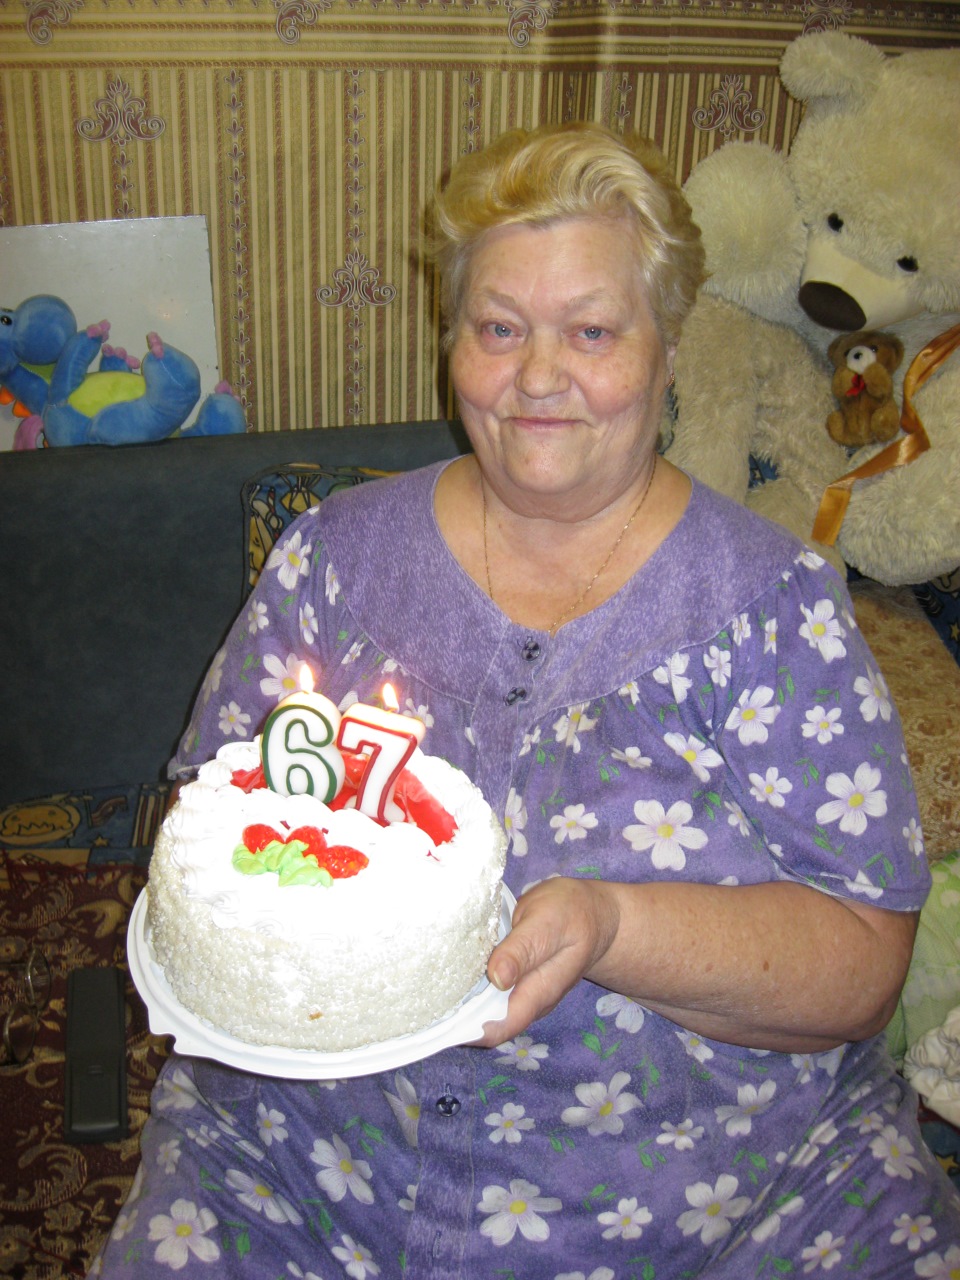 торт для бабушки на день рождения фото